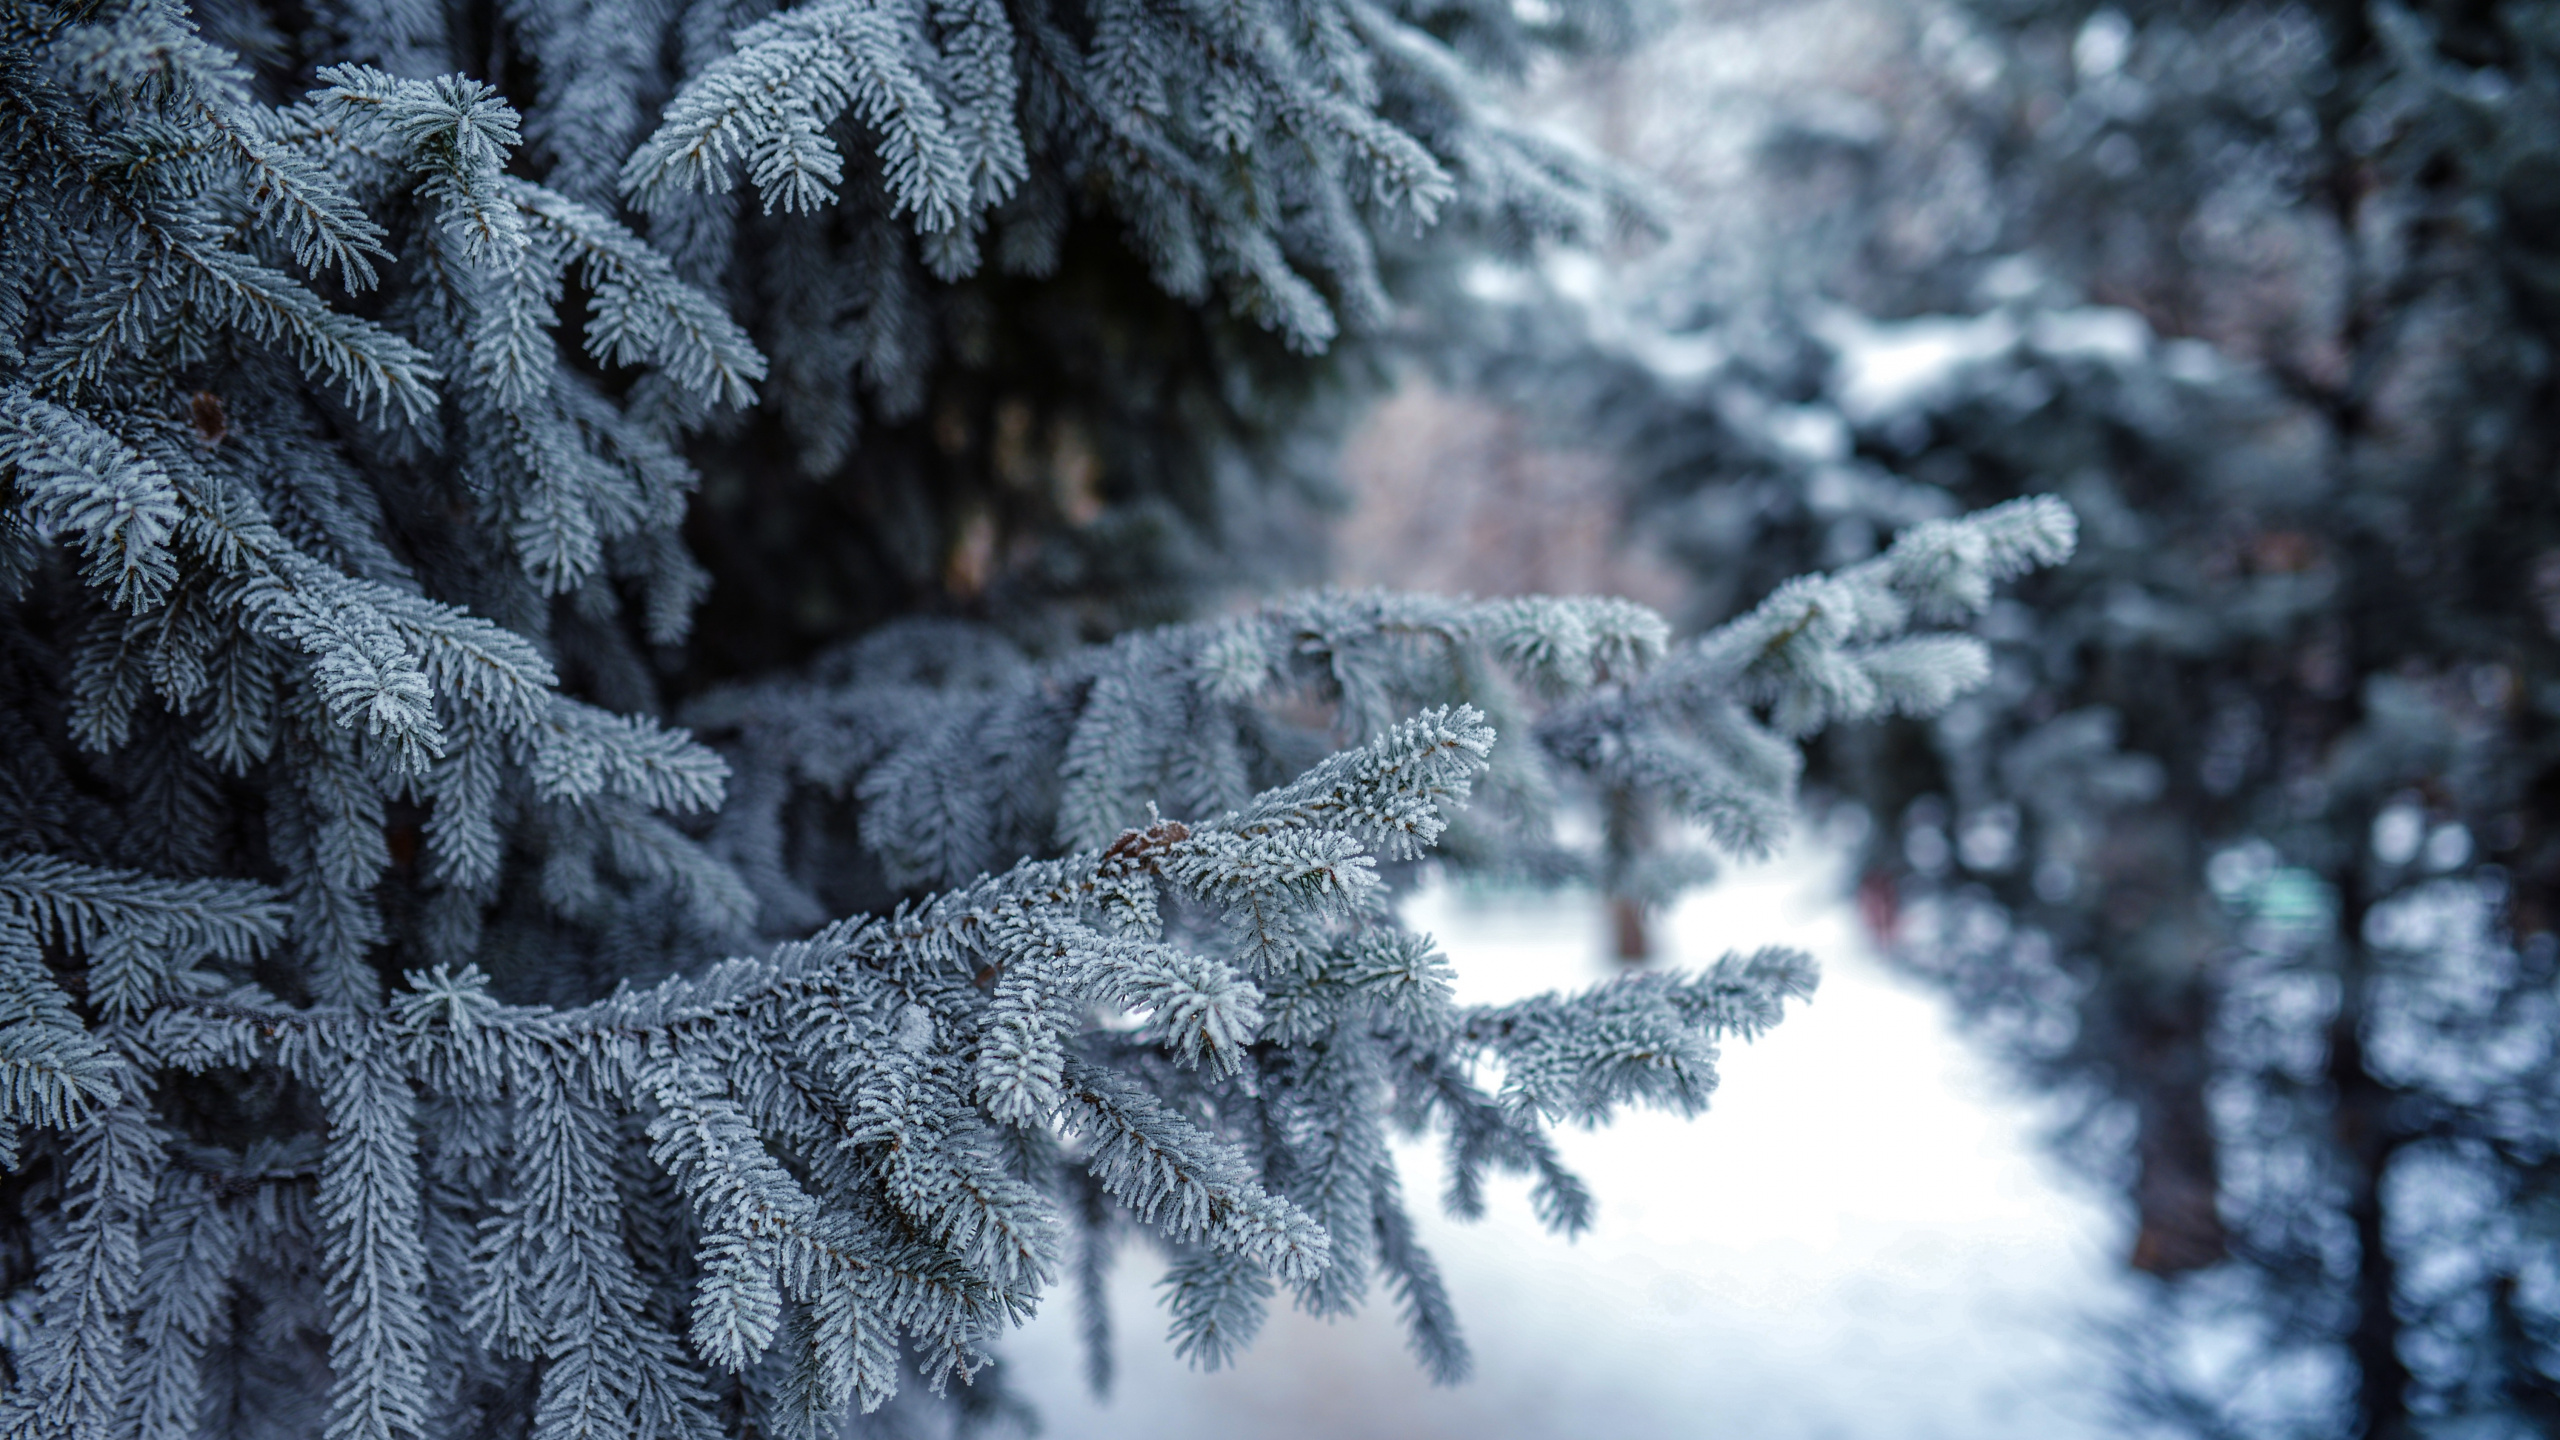 冬天, 冻结, 温带针叶林, 性质, 木本植物 壁纸 2560x1440 允许